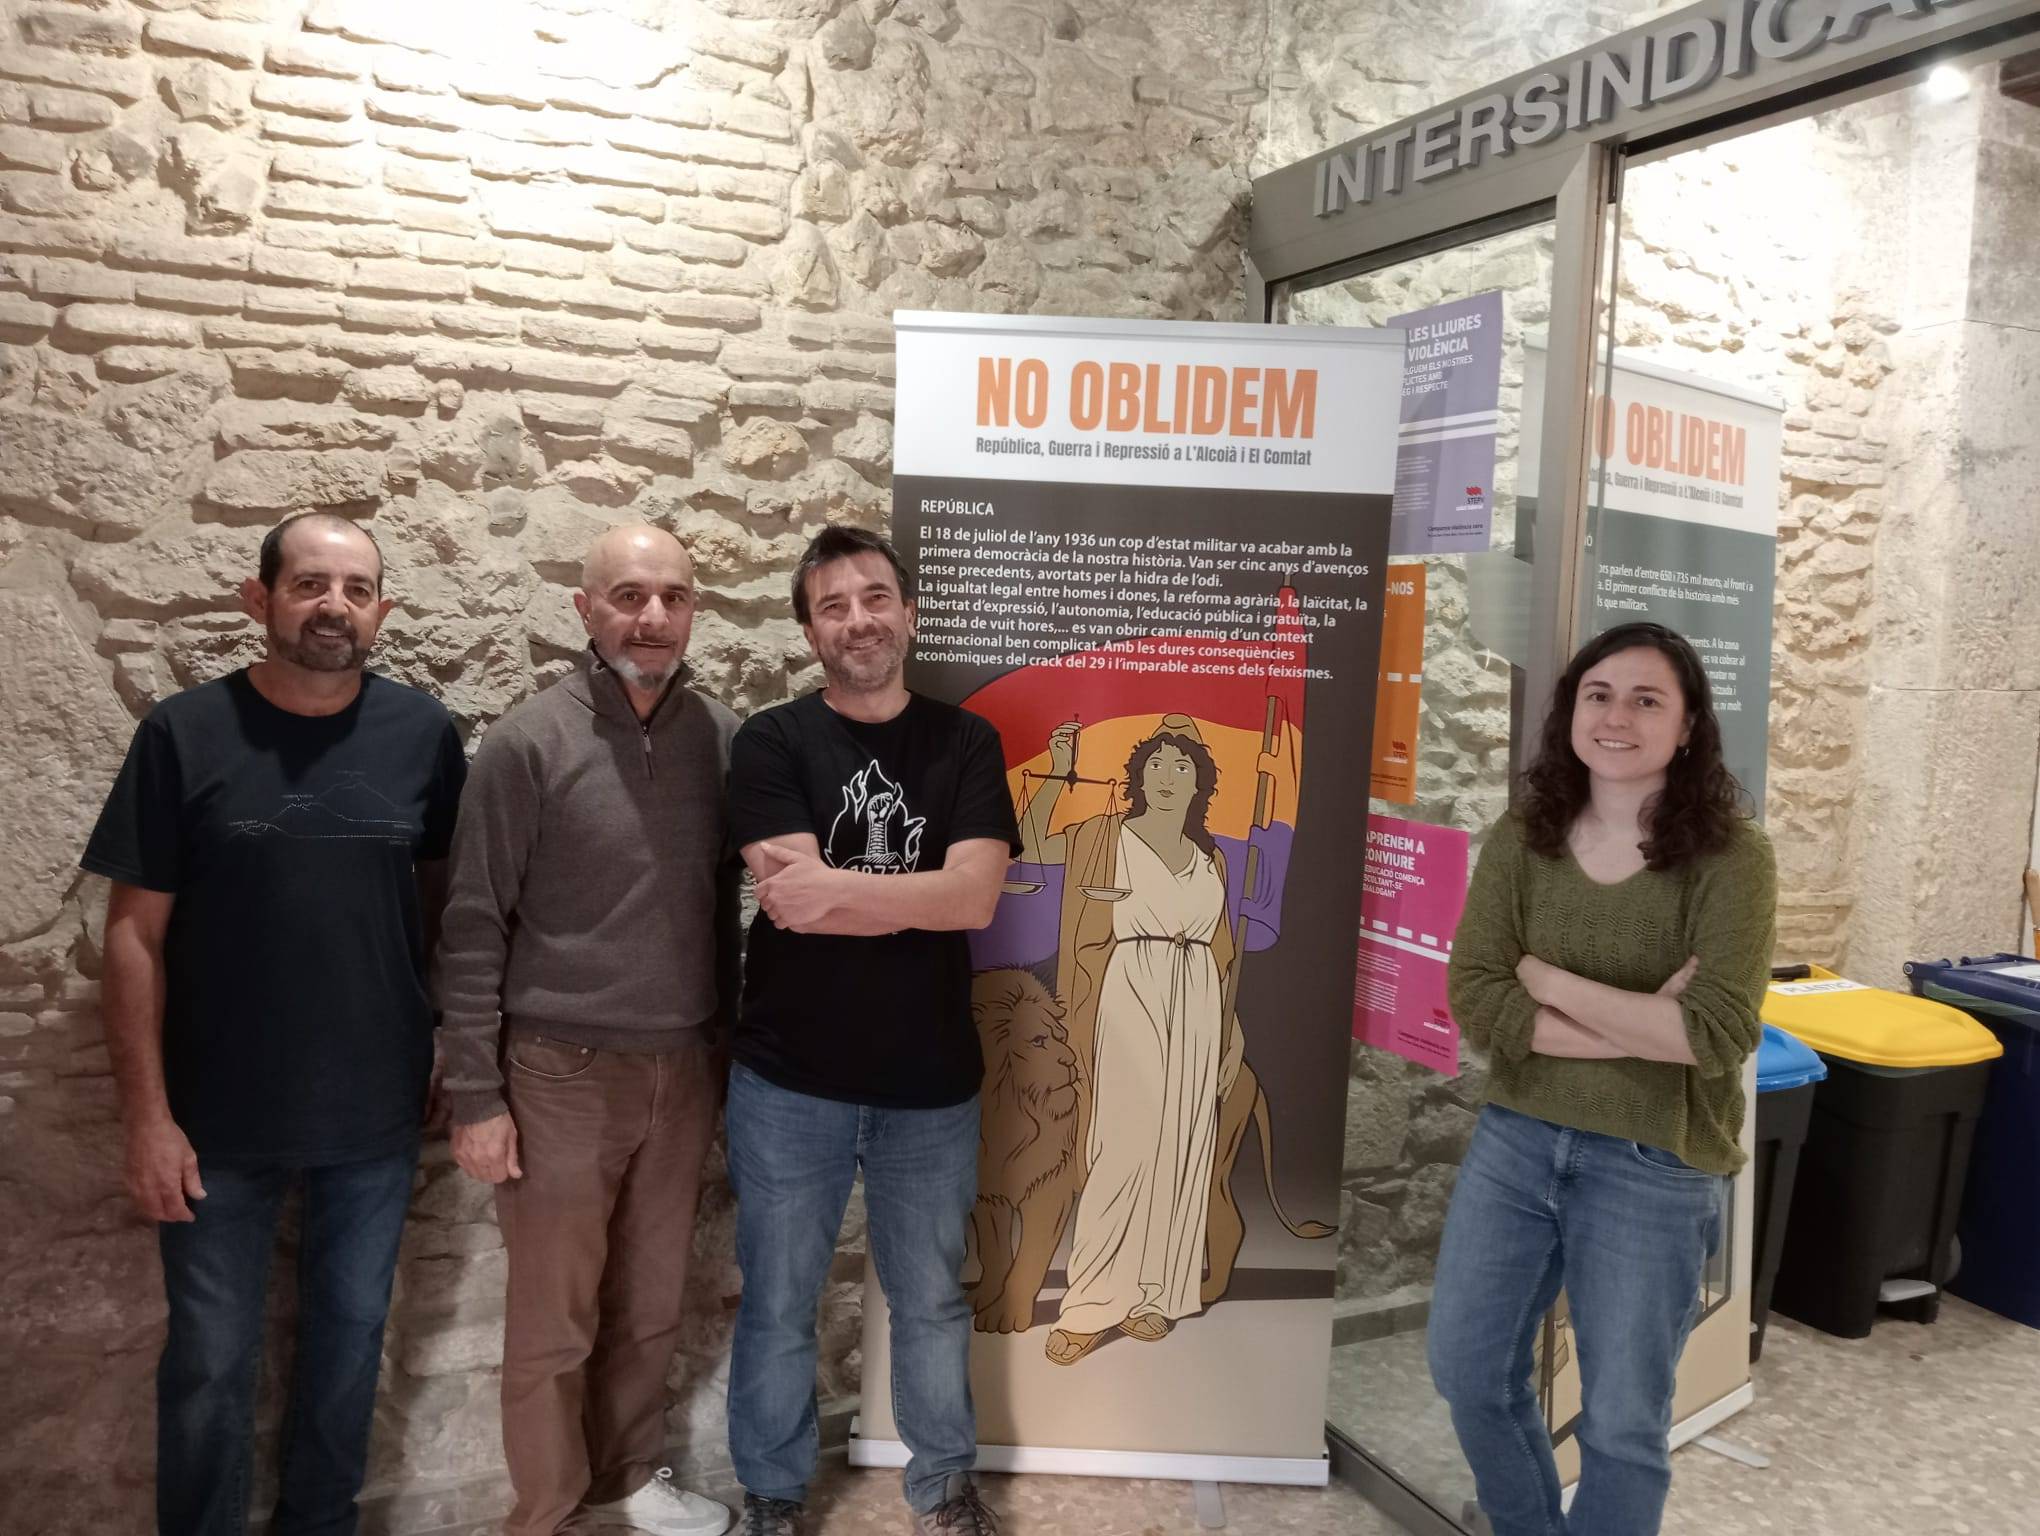 Intersindical Valenciana celebra en la seu del sindicat  l’ABRIL REPUBLICÀ amb l’exposició de  “No oblidem”